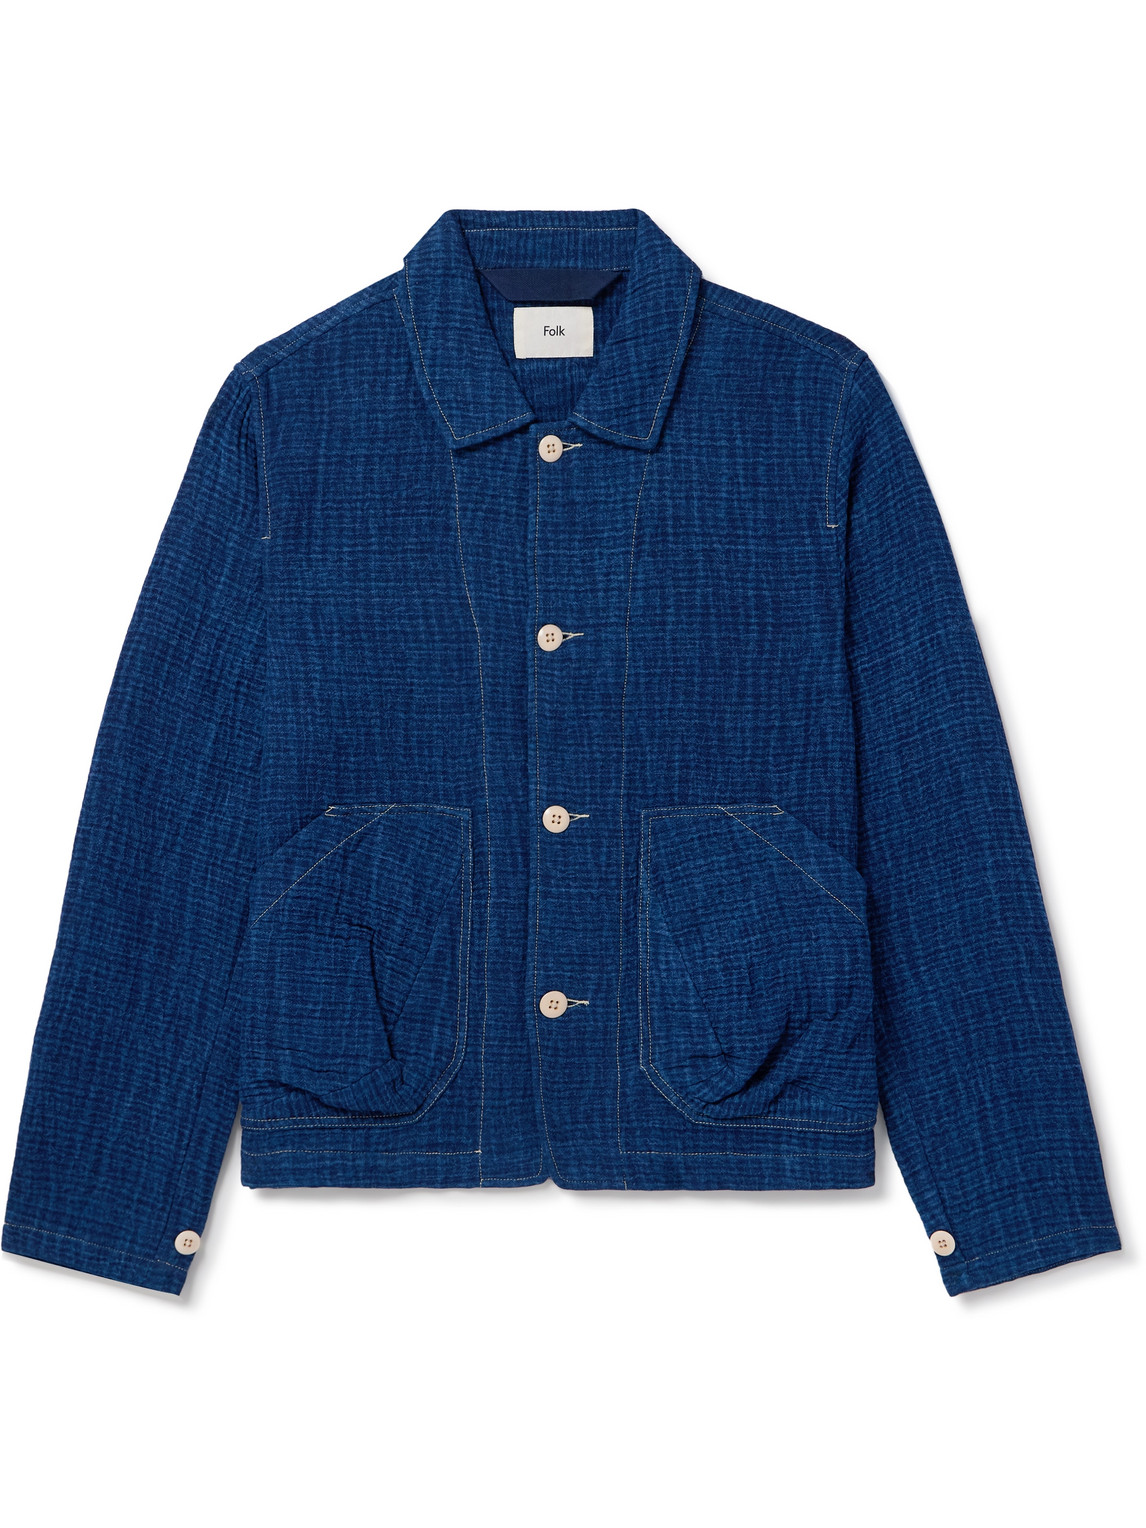 Folk Prism Cotton-seersucker Jacket In Blue